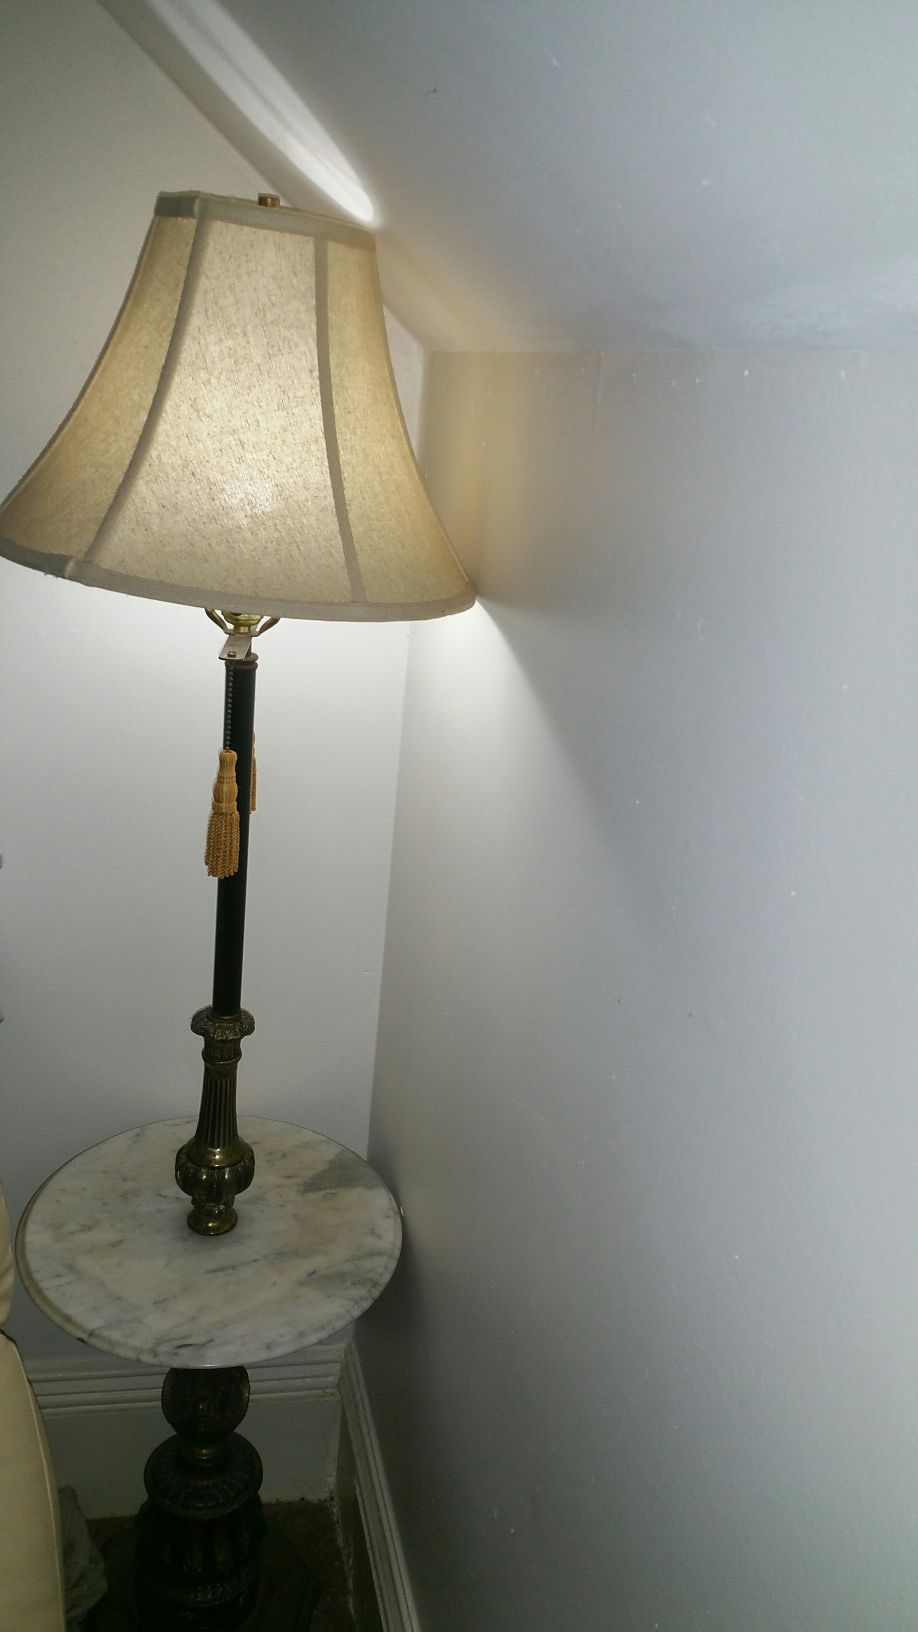 Antique lamp, ceramic